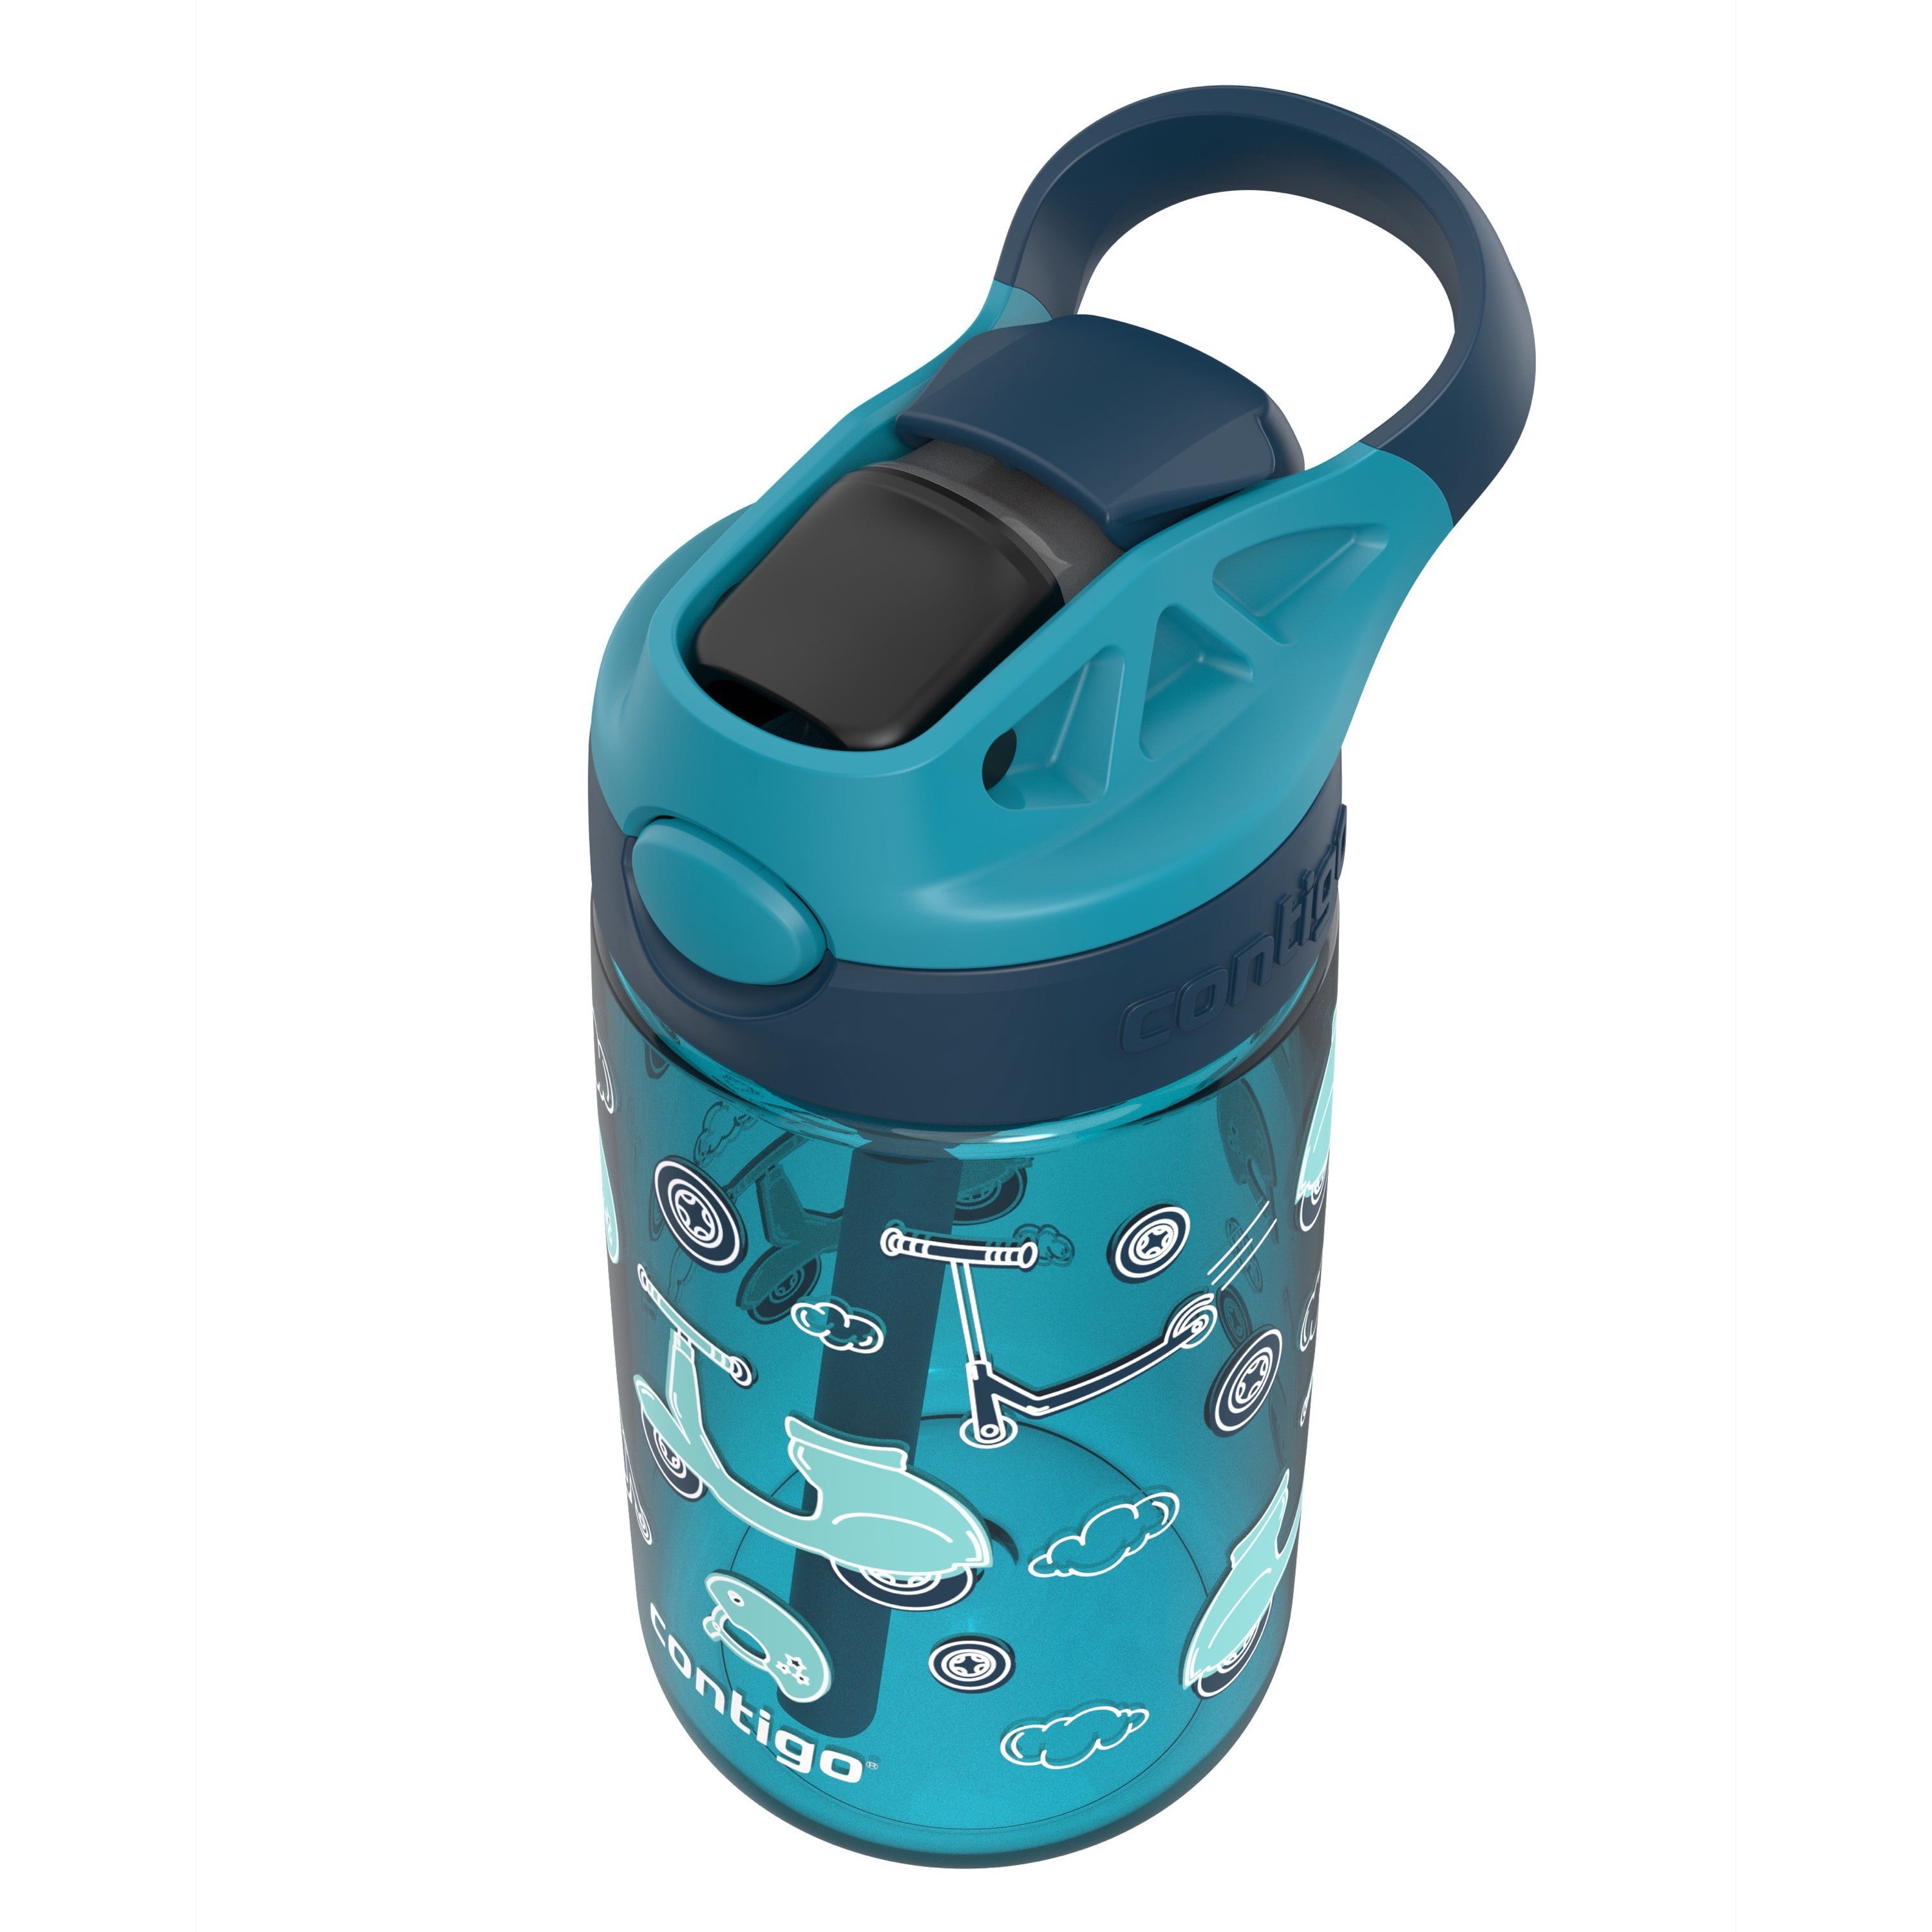 Contigo Aubrey Leak-Proof Spill-Proof Water Bottle, Blue Butterflies, 14 oz.